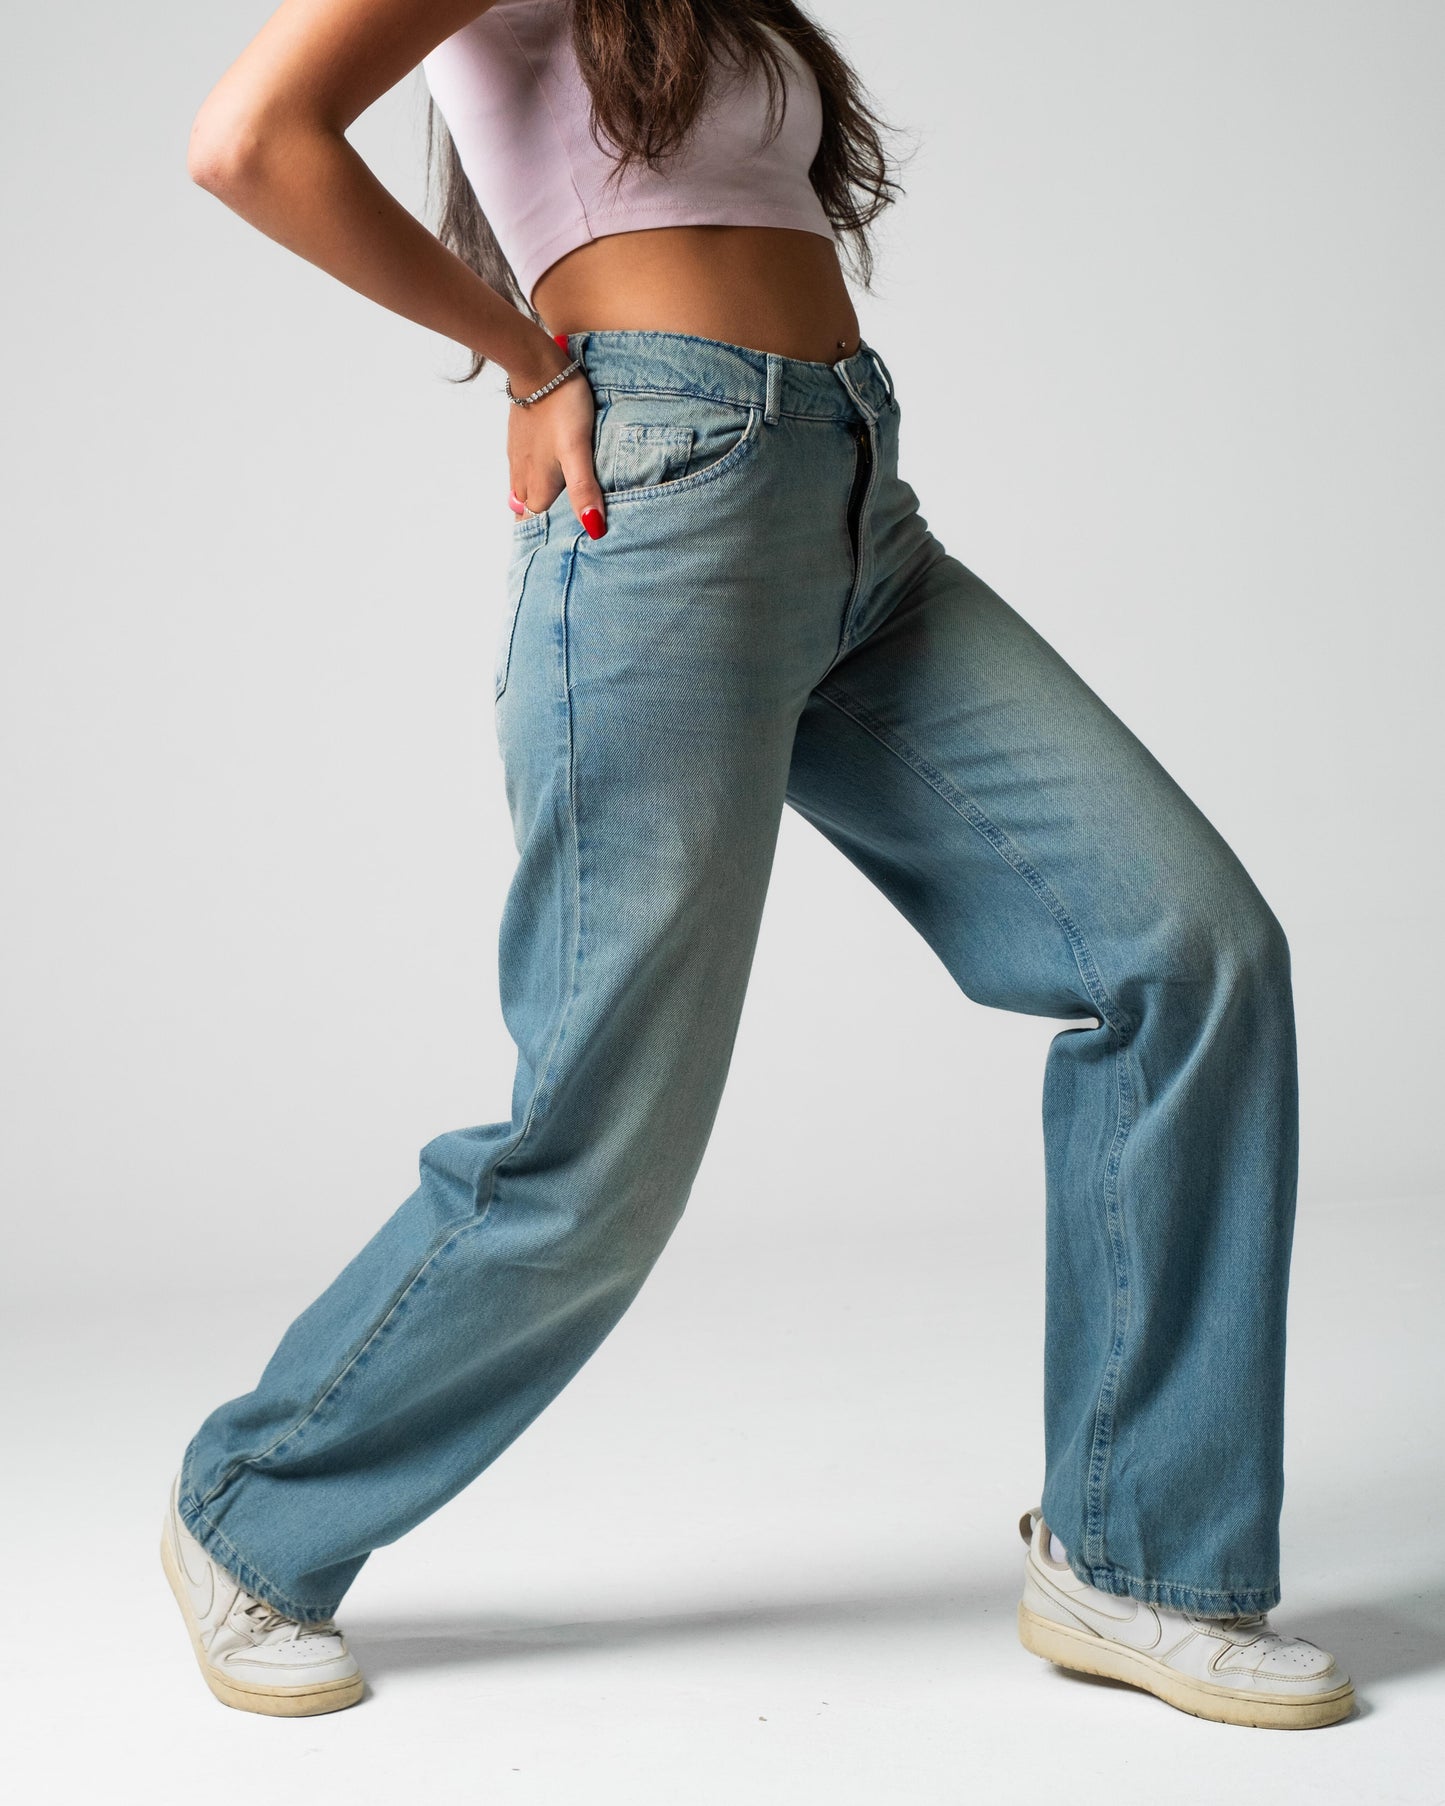 90s Fit Women's Jeans (Aqua Blue)